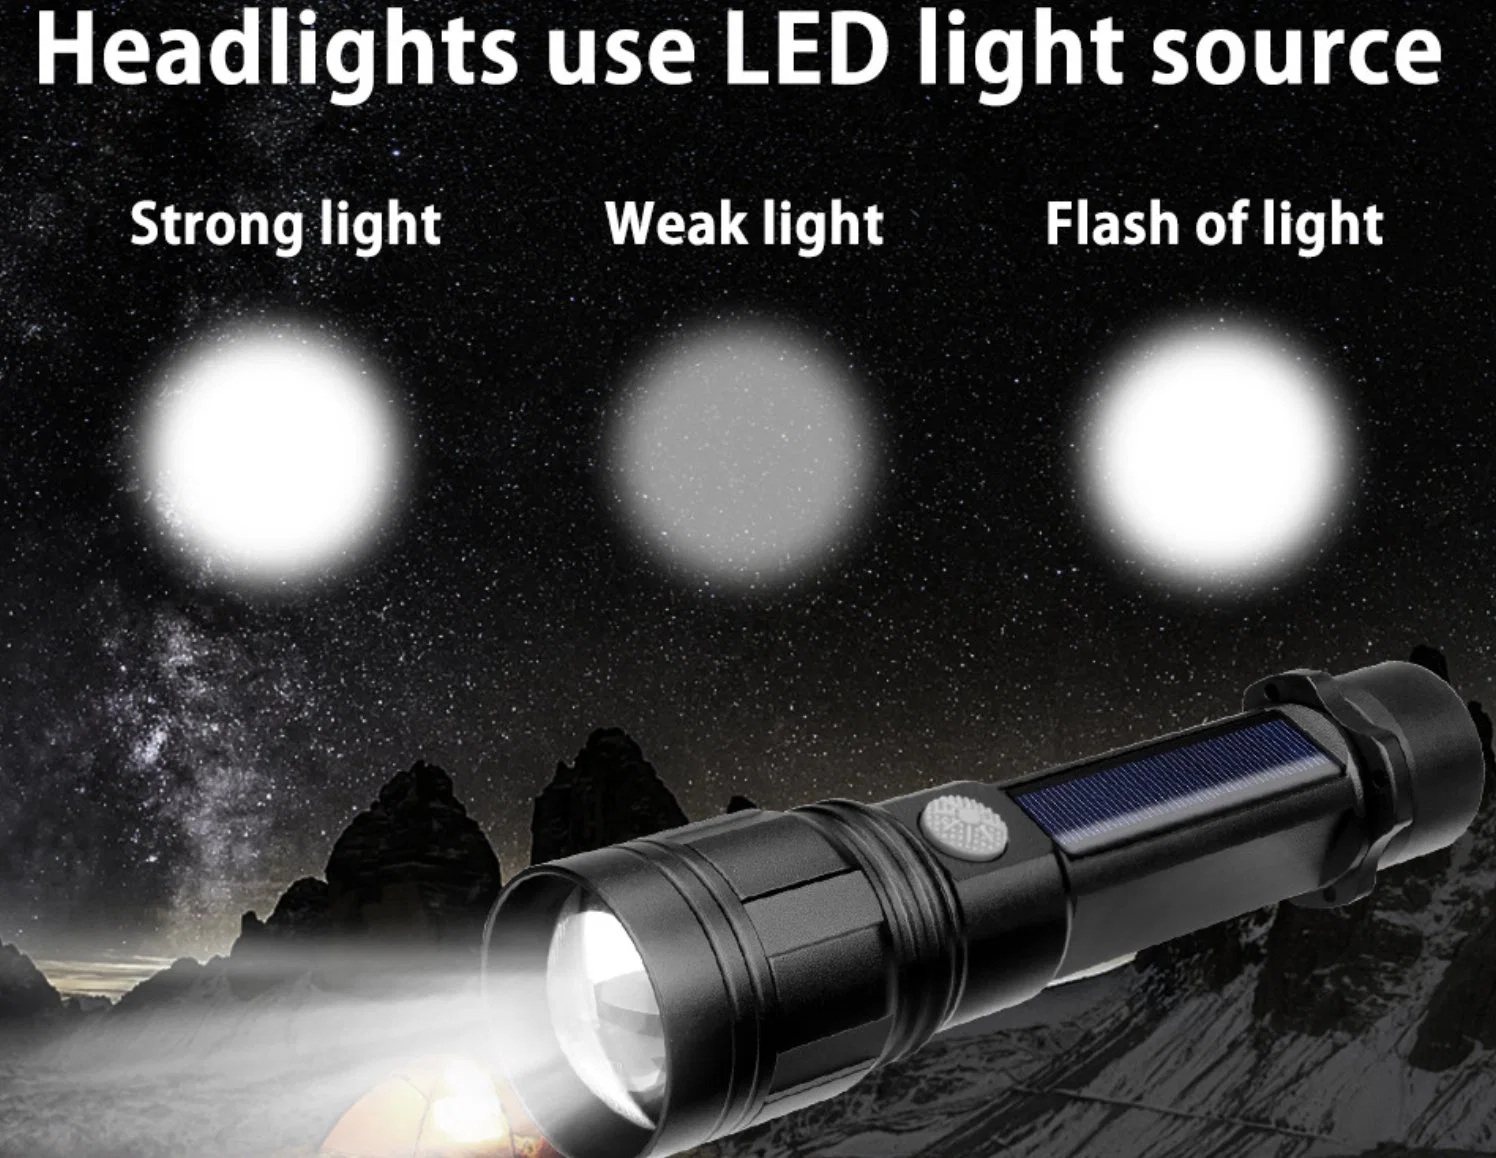 مصابيح كهربائية مع مصباح بوصلة LED، مصباح متعدد الوظائف مع إمكانية ضبط التكبير/التصغير وشاحن USB رائع لانقطاع الطاقة في حالات الطوارئ LED التخييم ضوء وامض